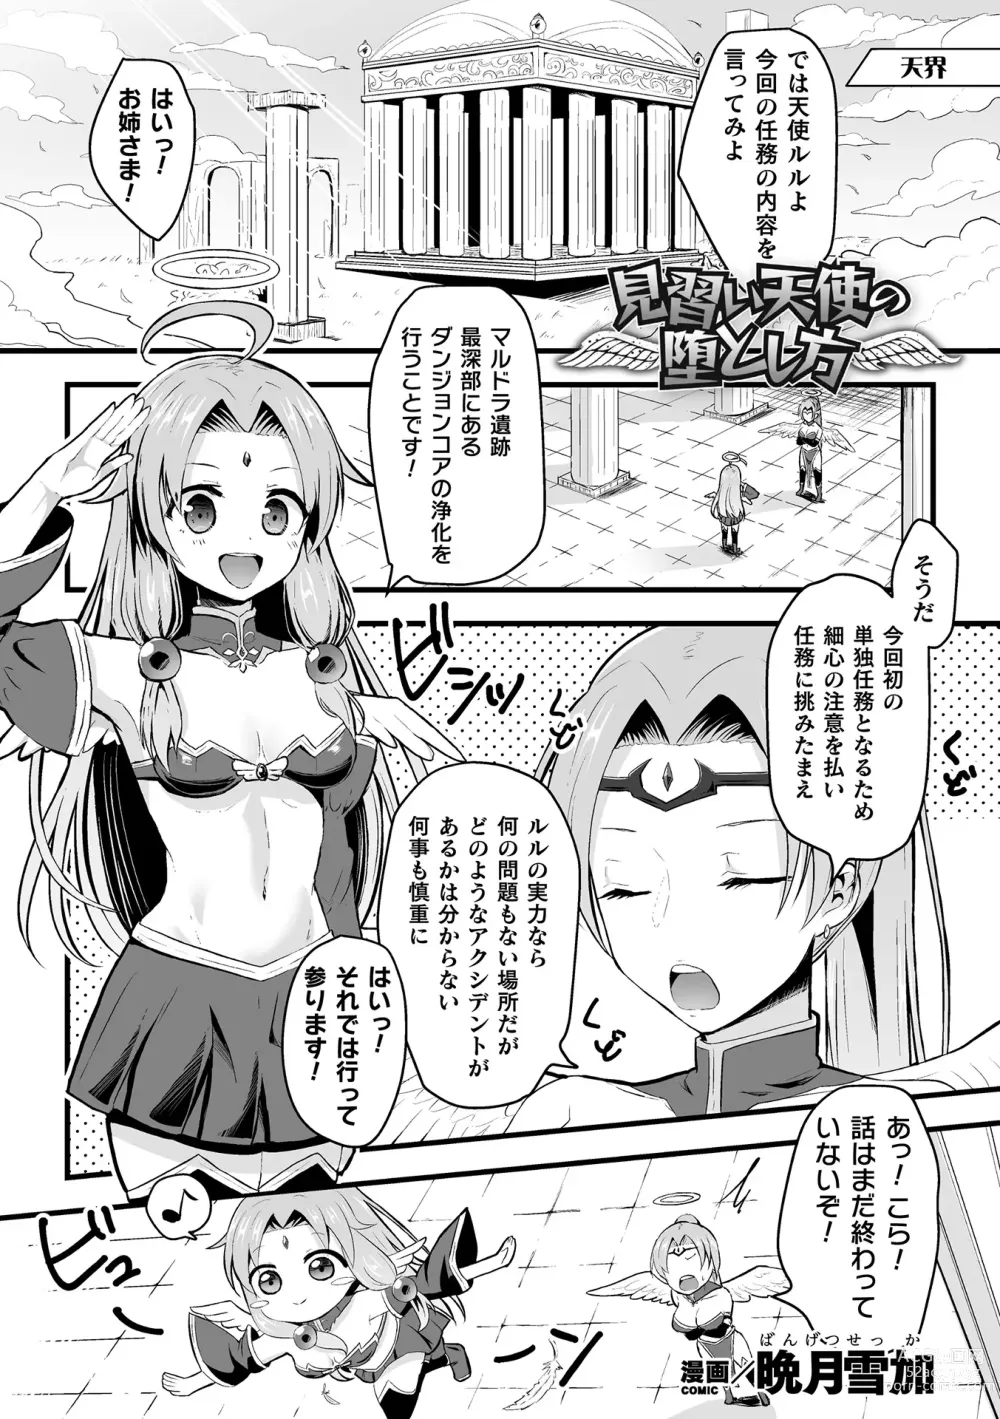 Page 21 of manga 2D Comic Magazine Zecchou Kairaku ga Tomaranai Ero-Trap Dungeon Vol. 3